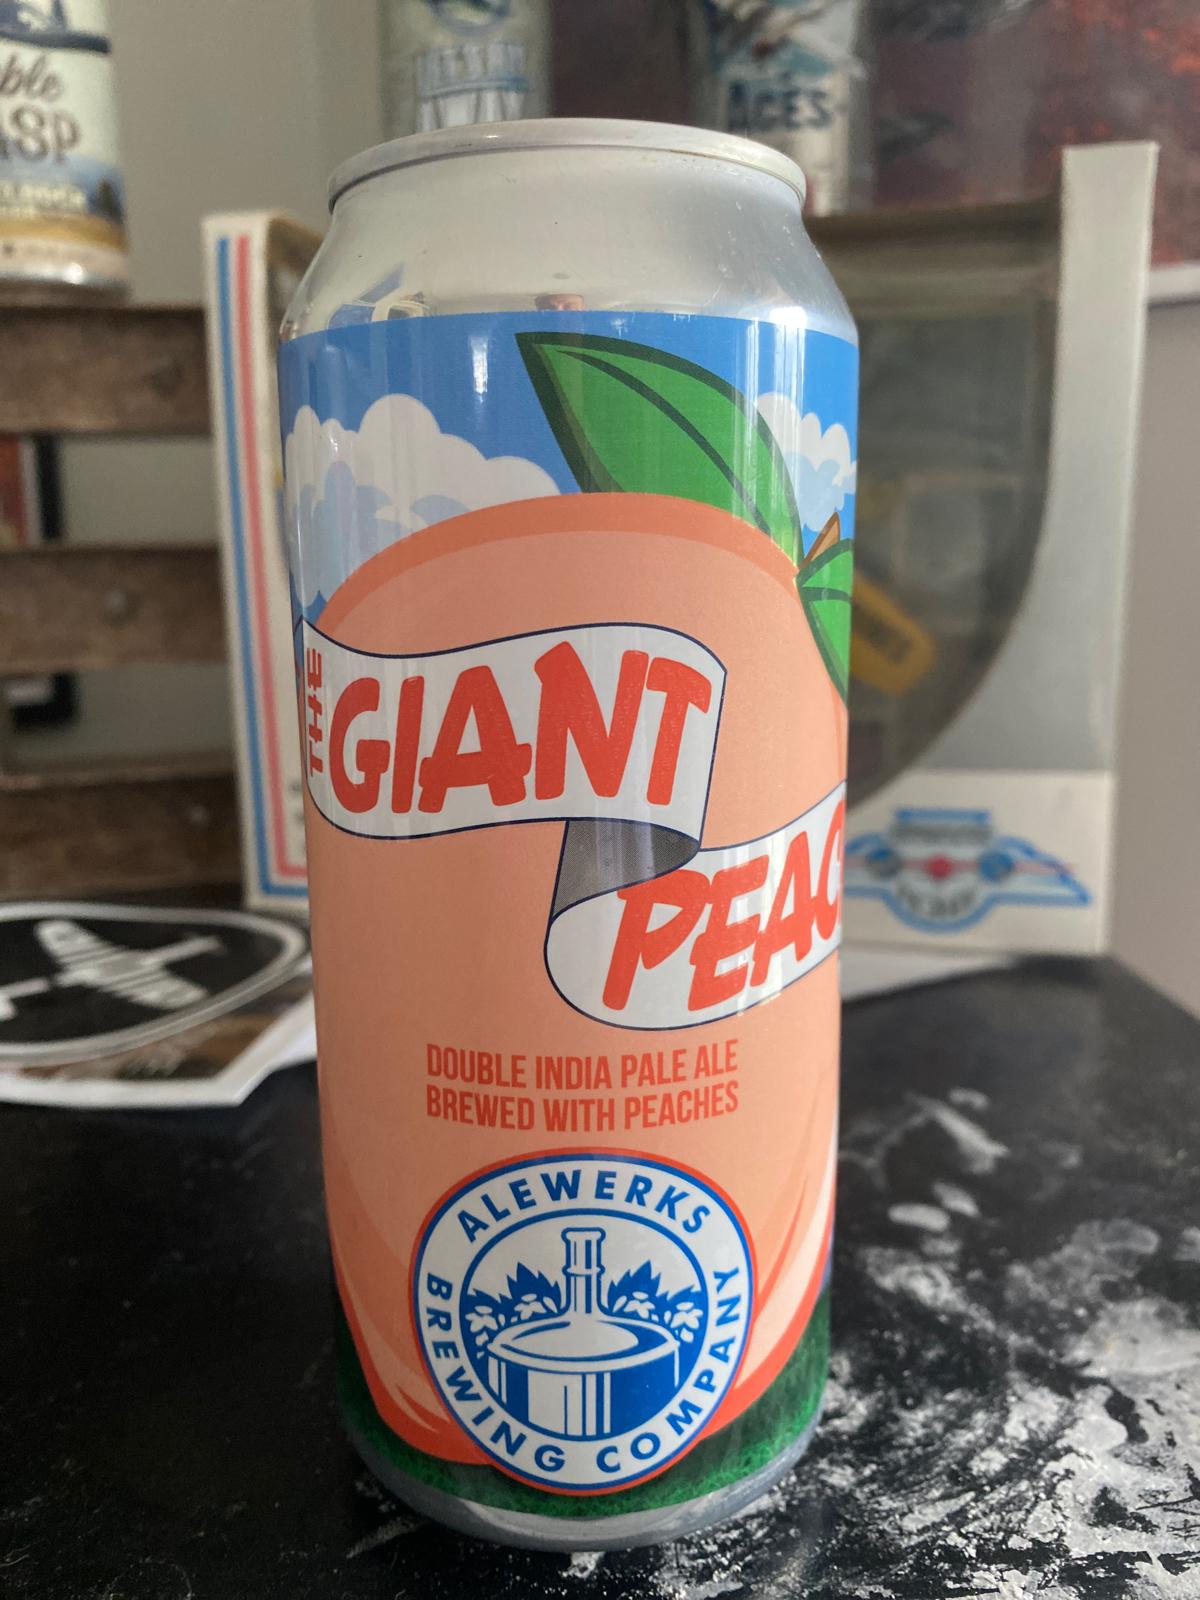 The Giant Peach